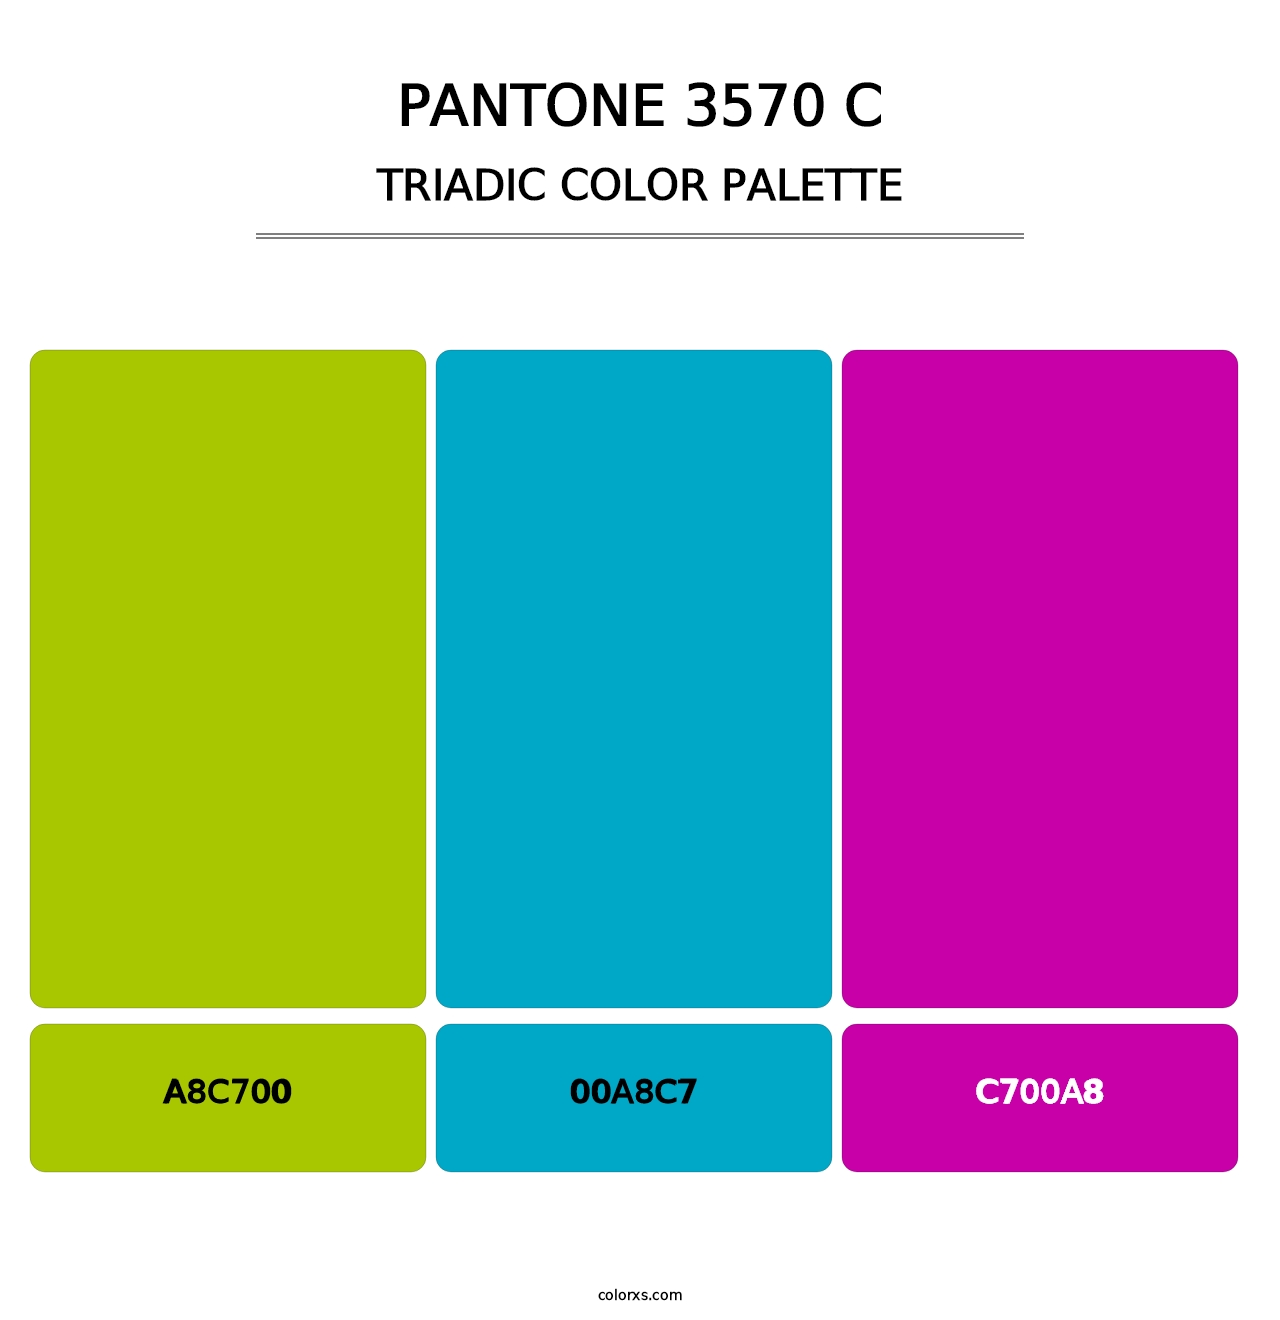 PANTONE 3570 C - Triadic Color Palette